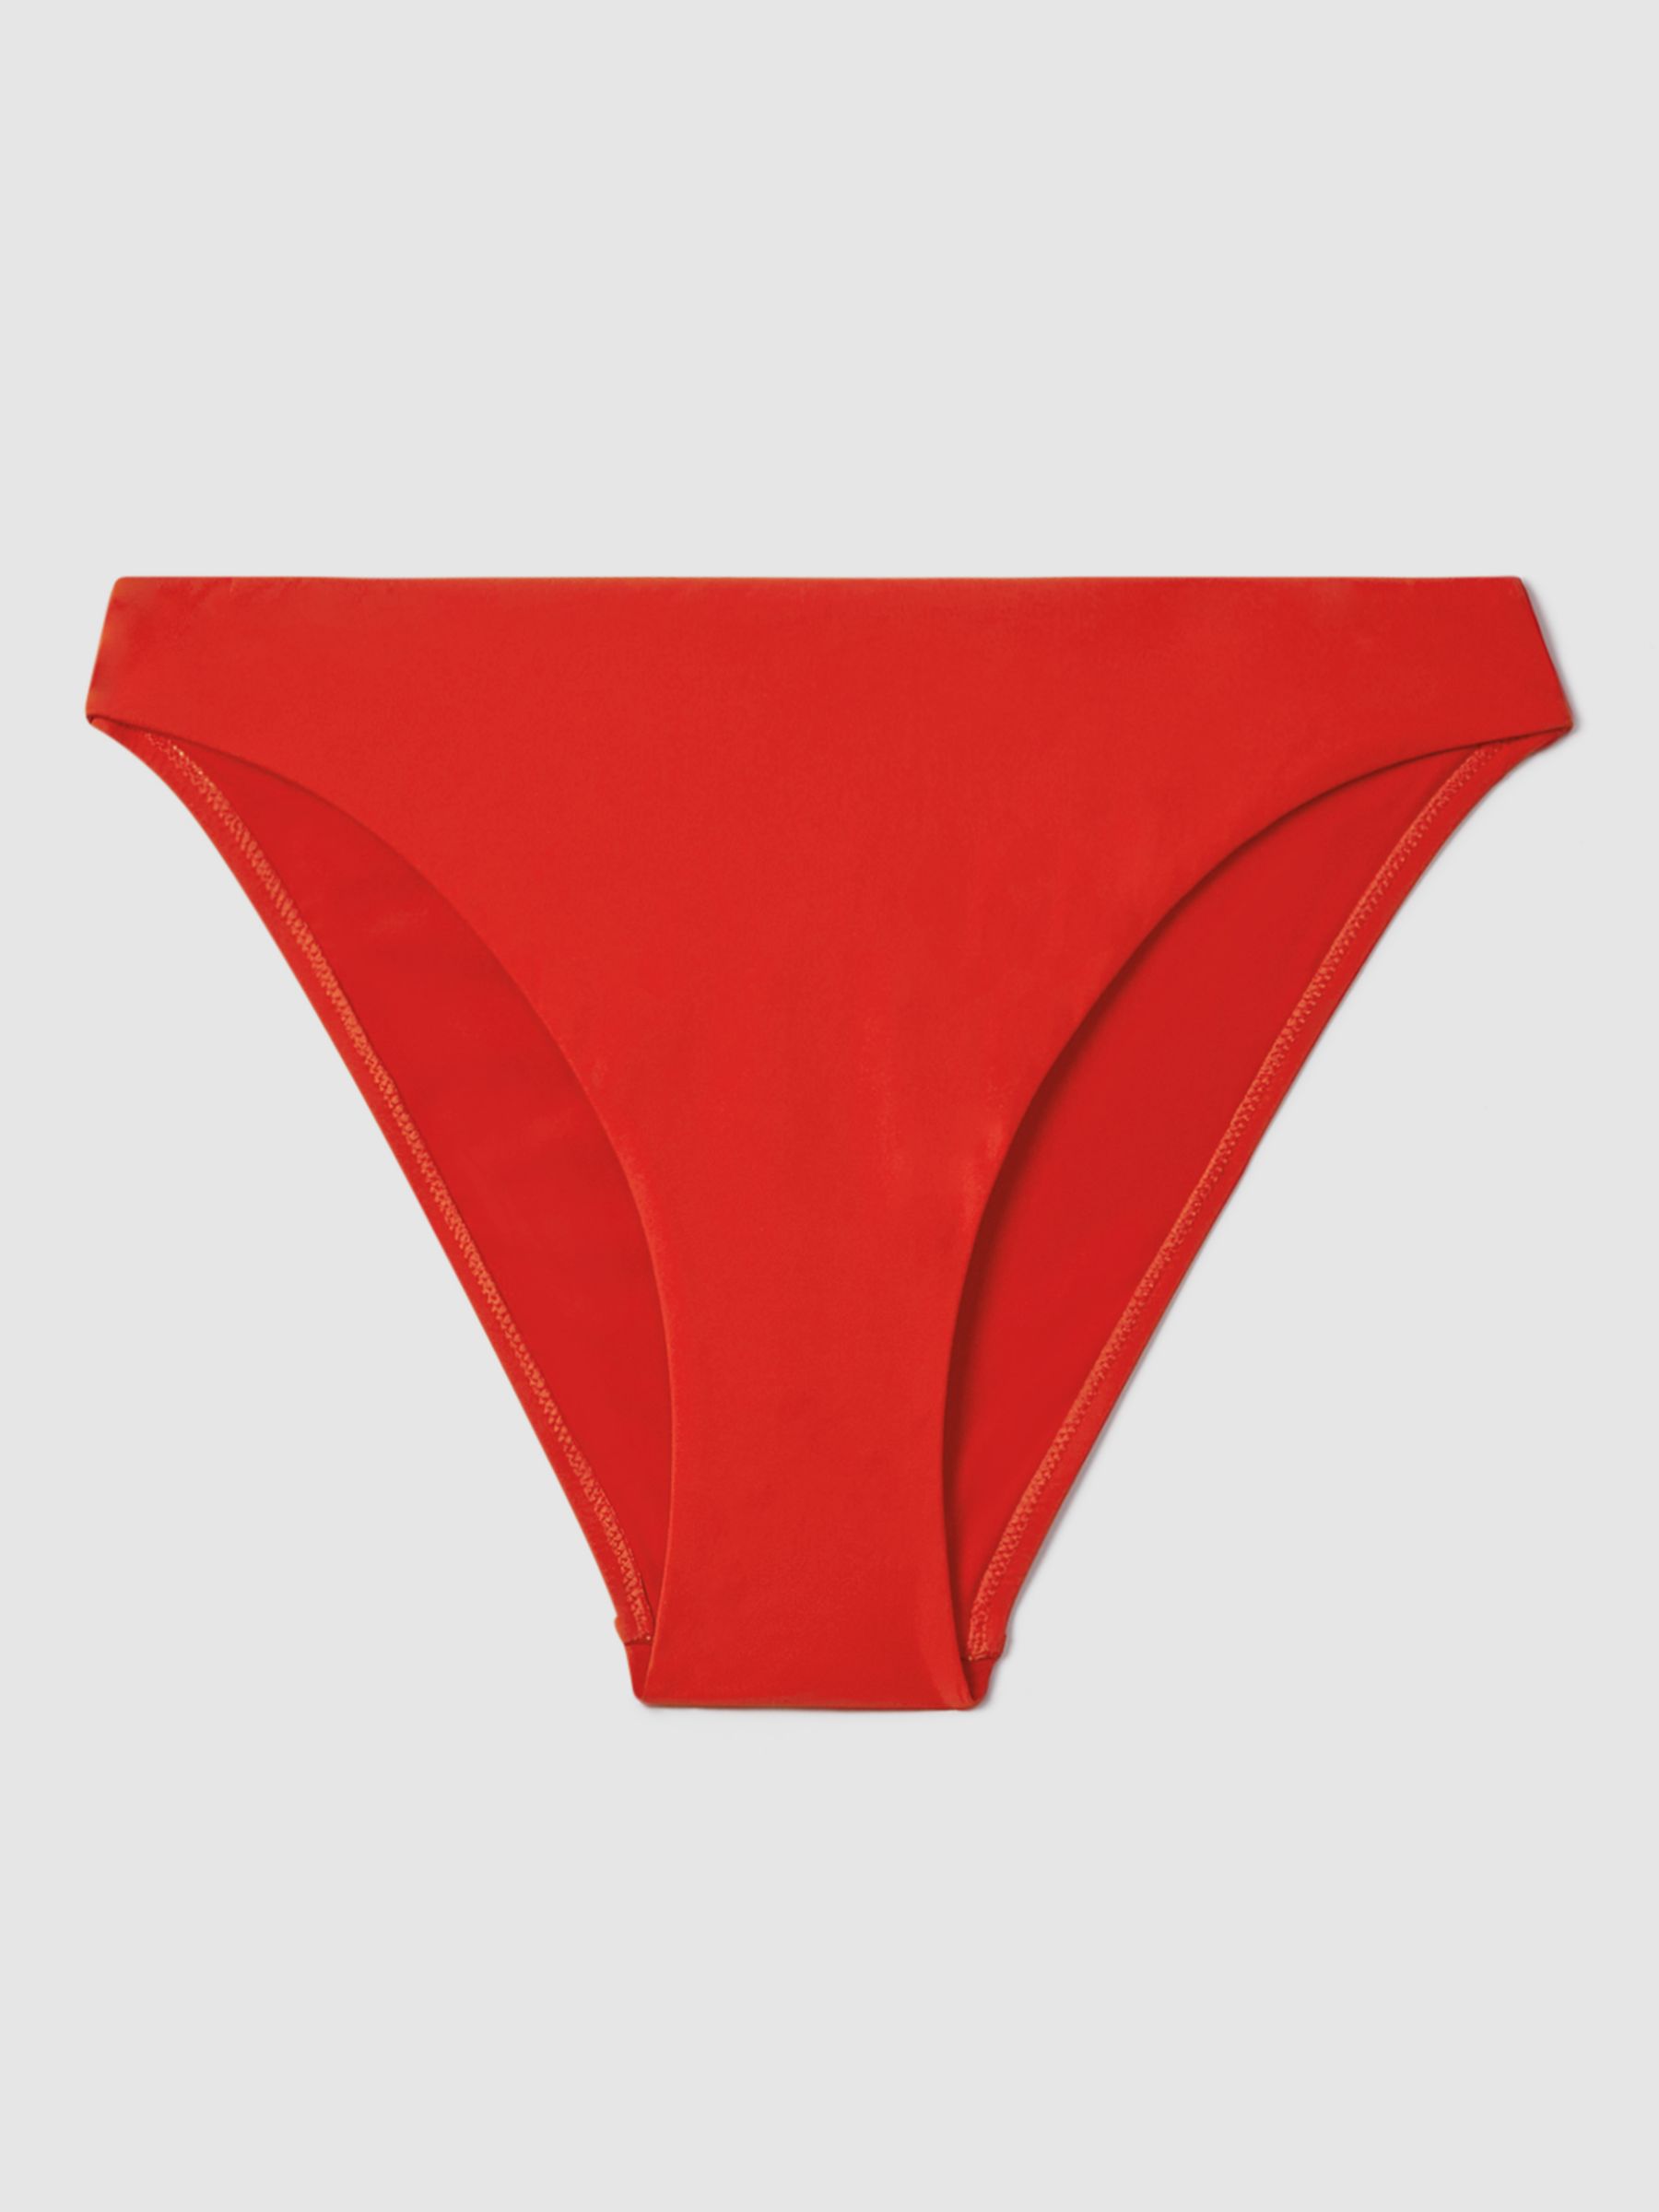 Reiss Aubrey High Cut Bikini Bottoms, Red, 6